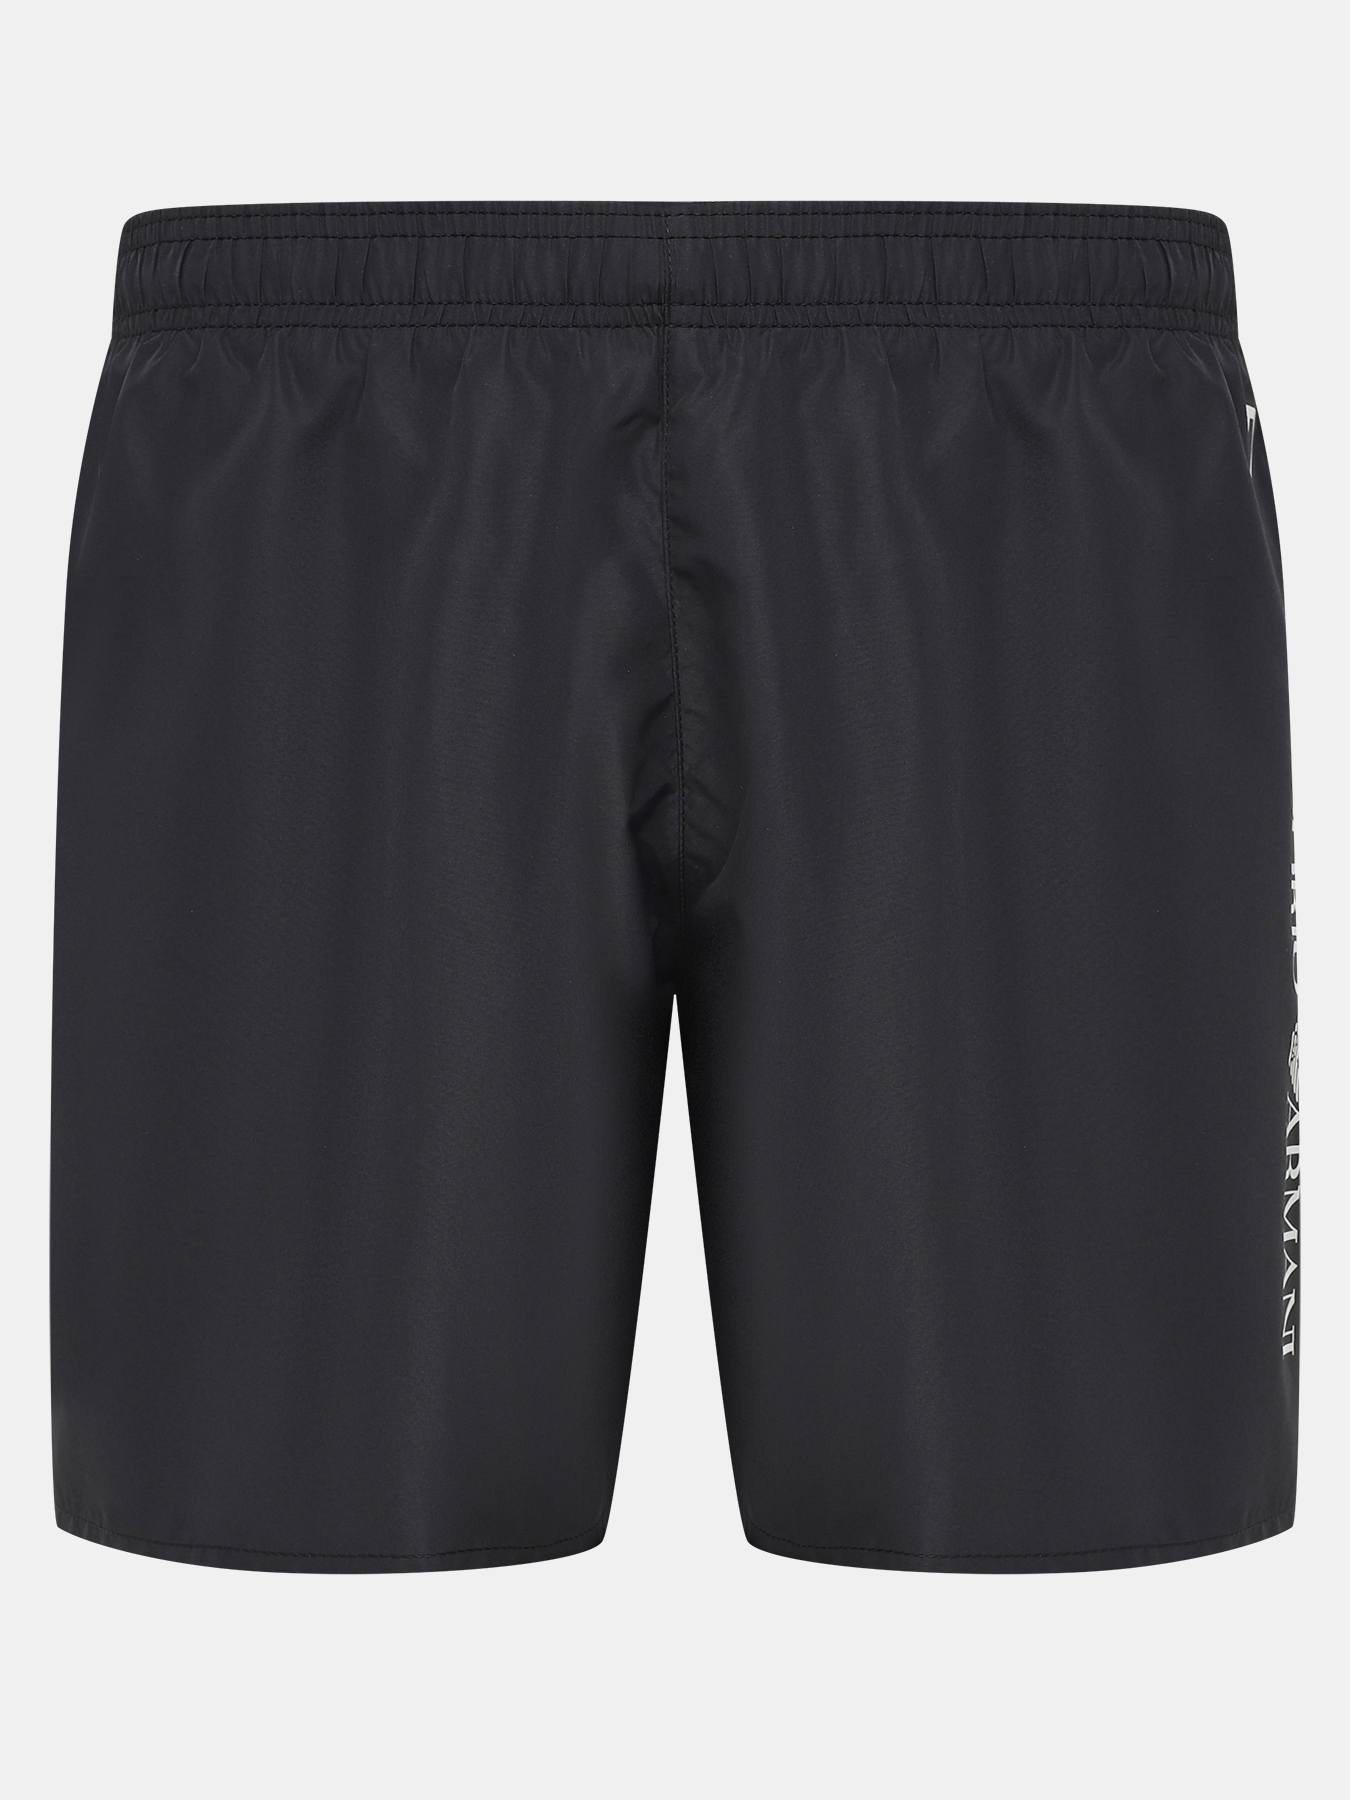 Плавательные шорты EA7 Emporio Armani 410060-028, цвет черный, размер 54